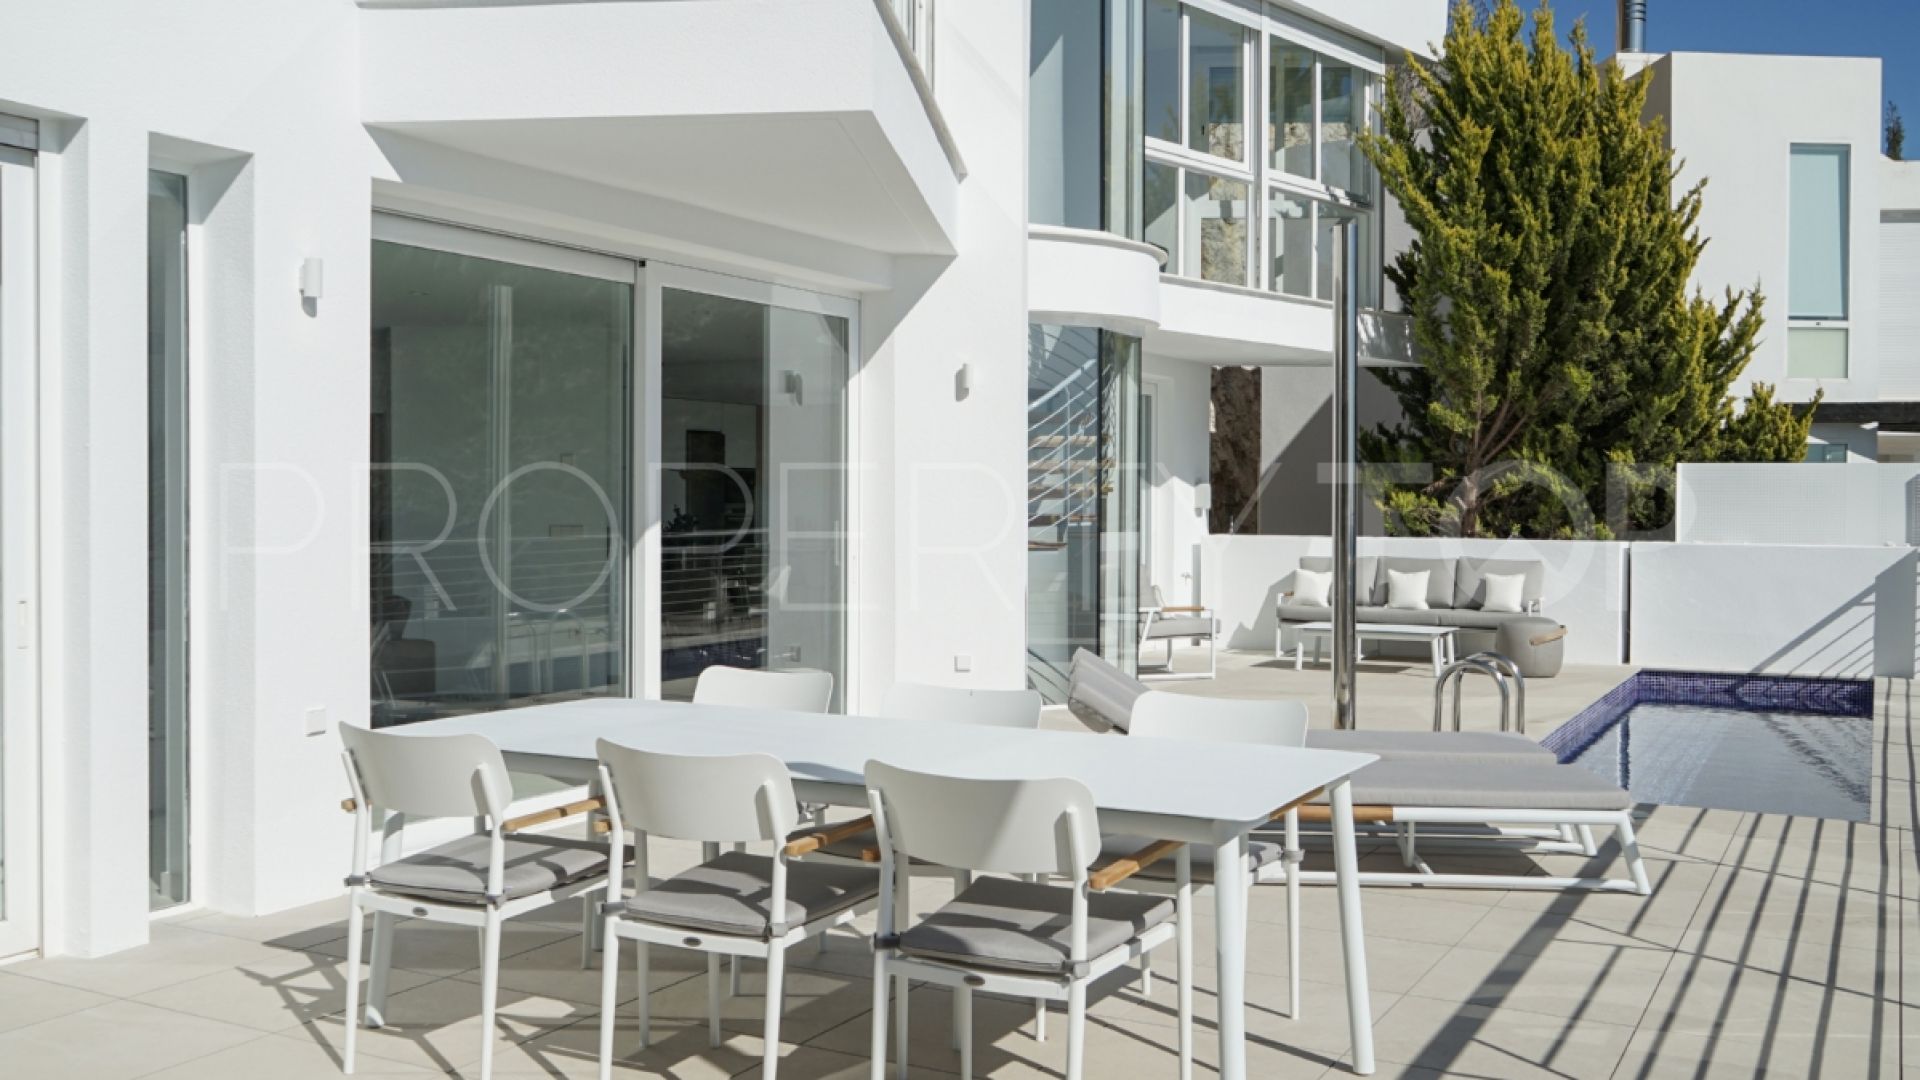 Villa with 5 bedrooms for sale in Sierra de Altea